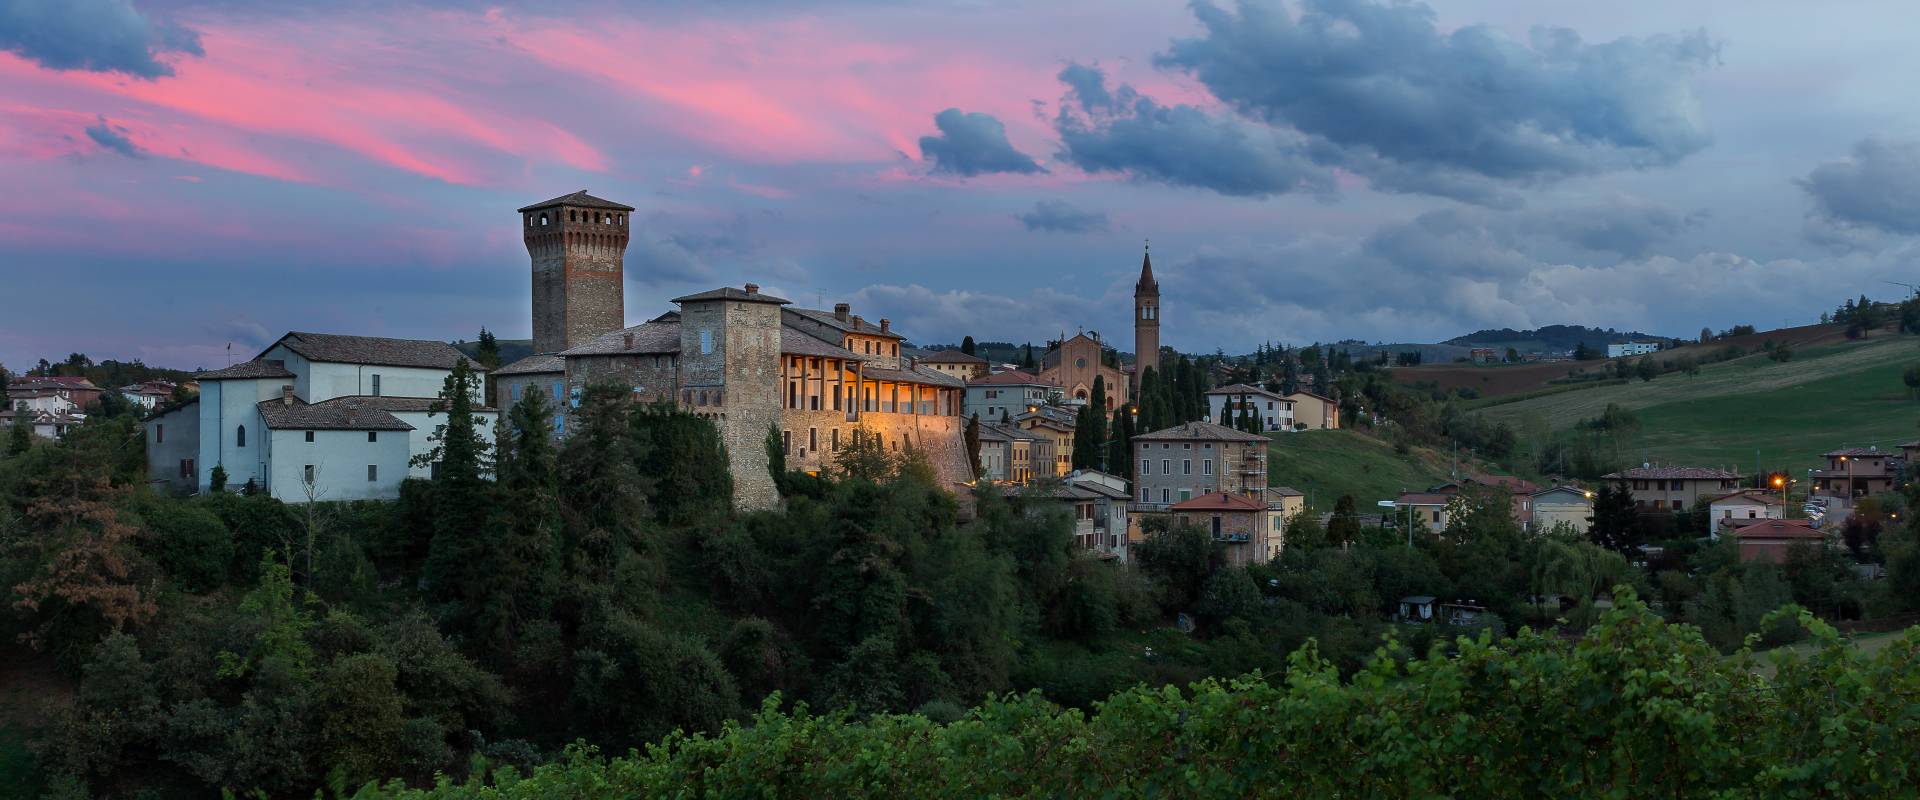 Levizzano Castle photo by Massimo Bonini